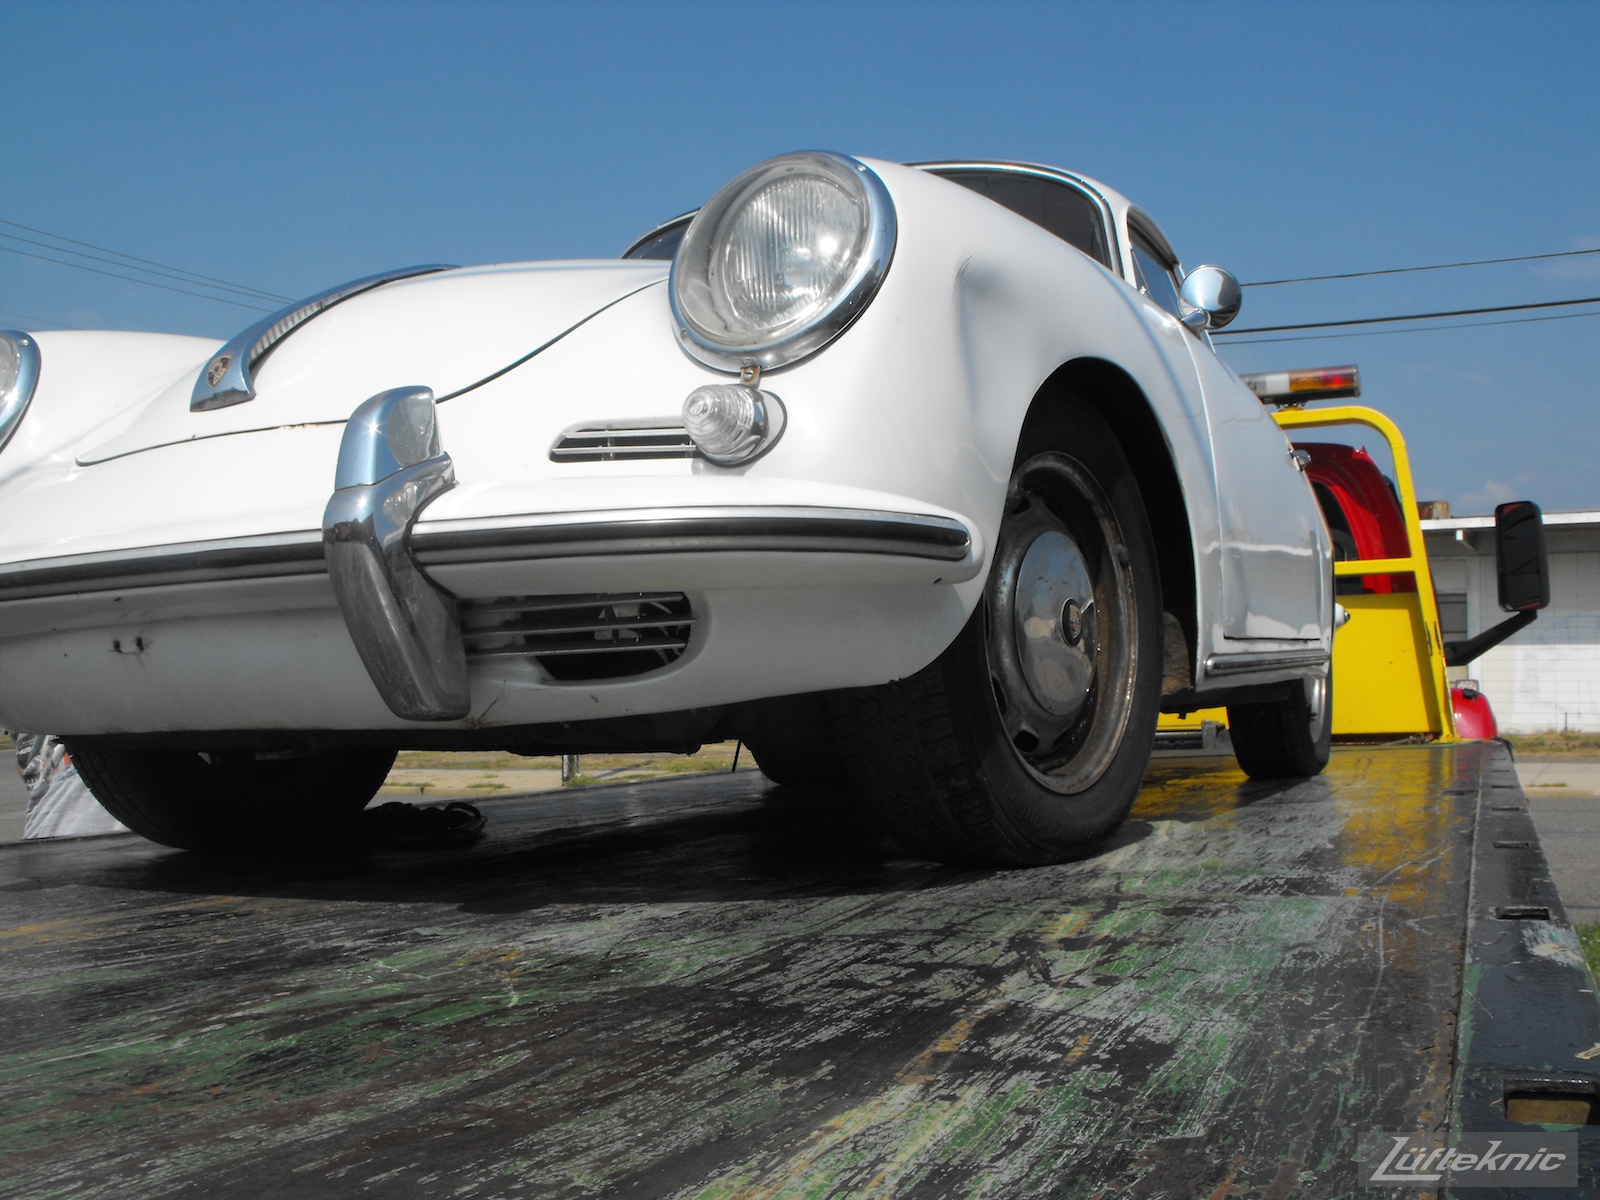 1964 Porsche 356SC restoration being towed in.